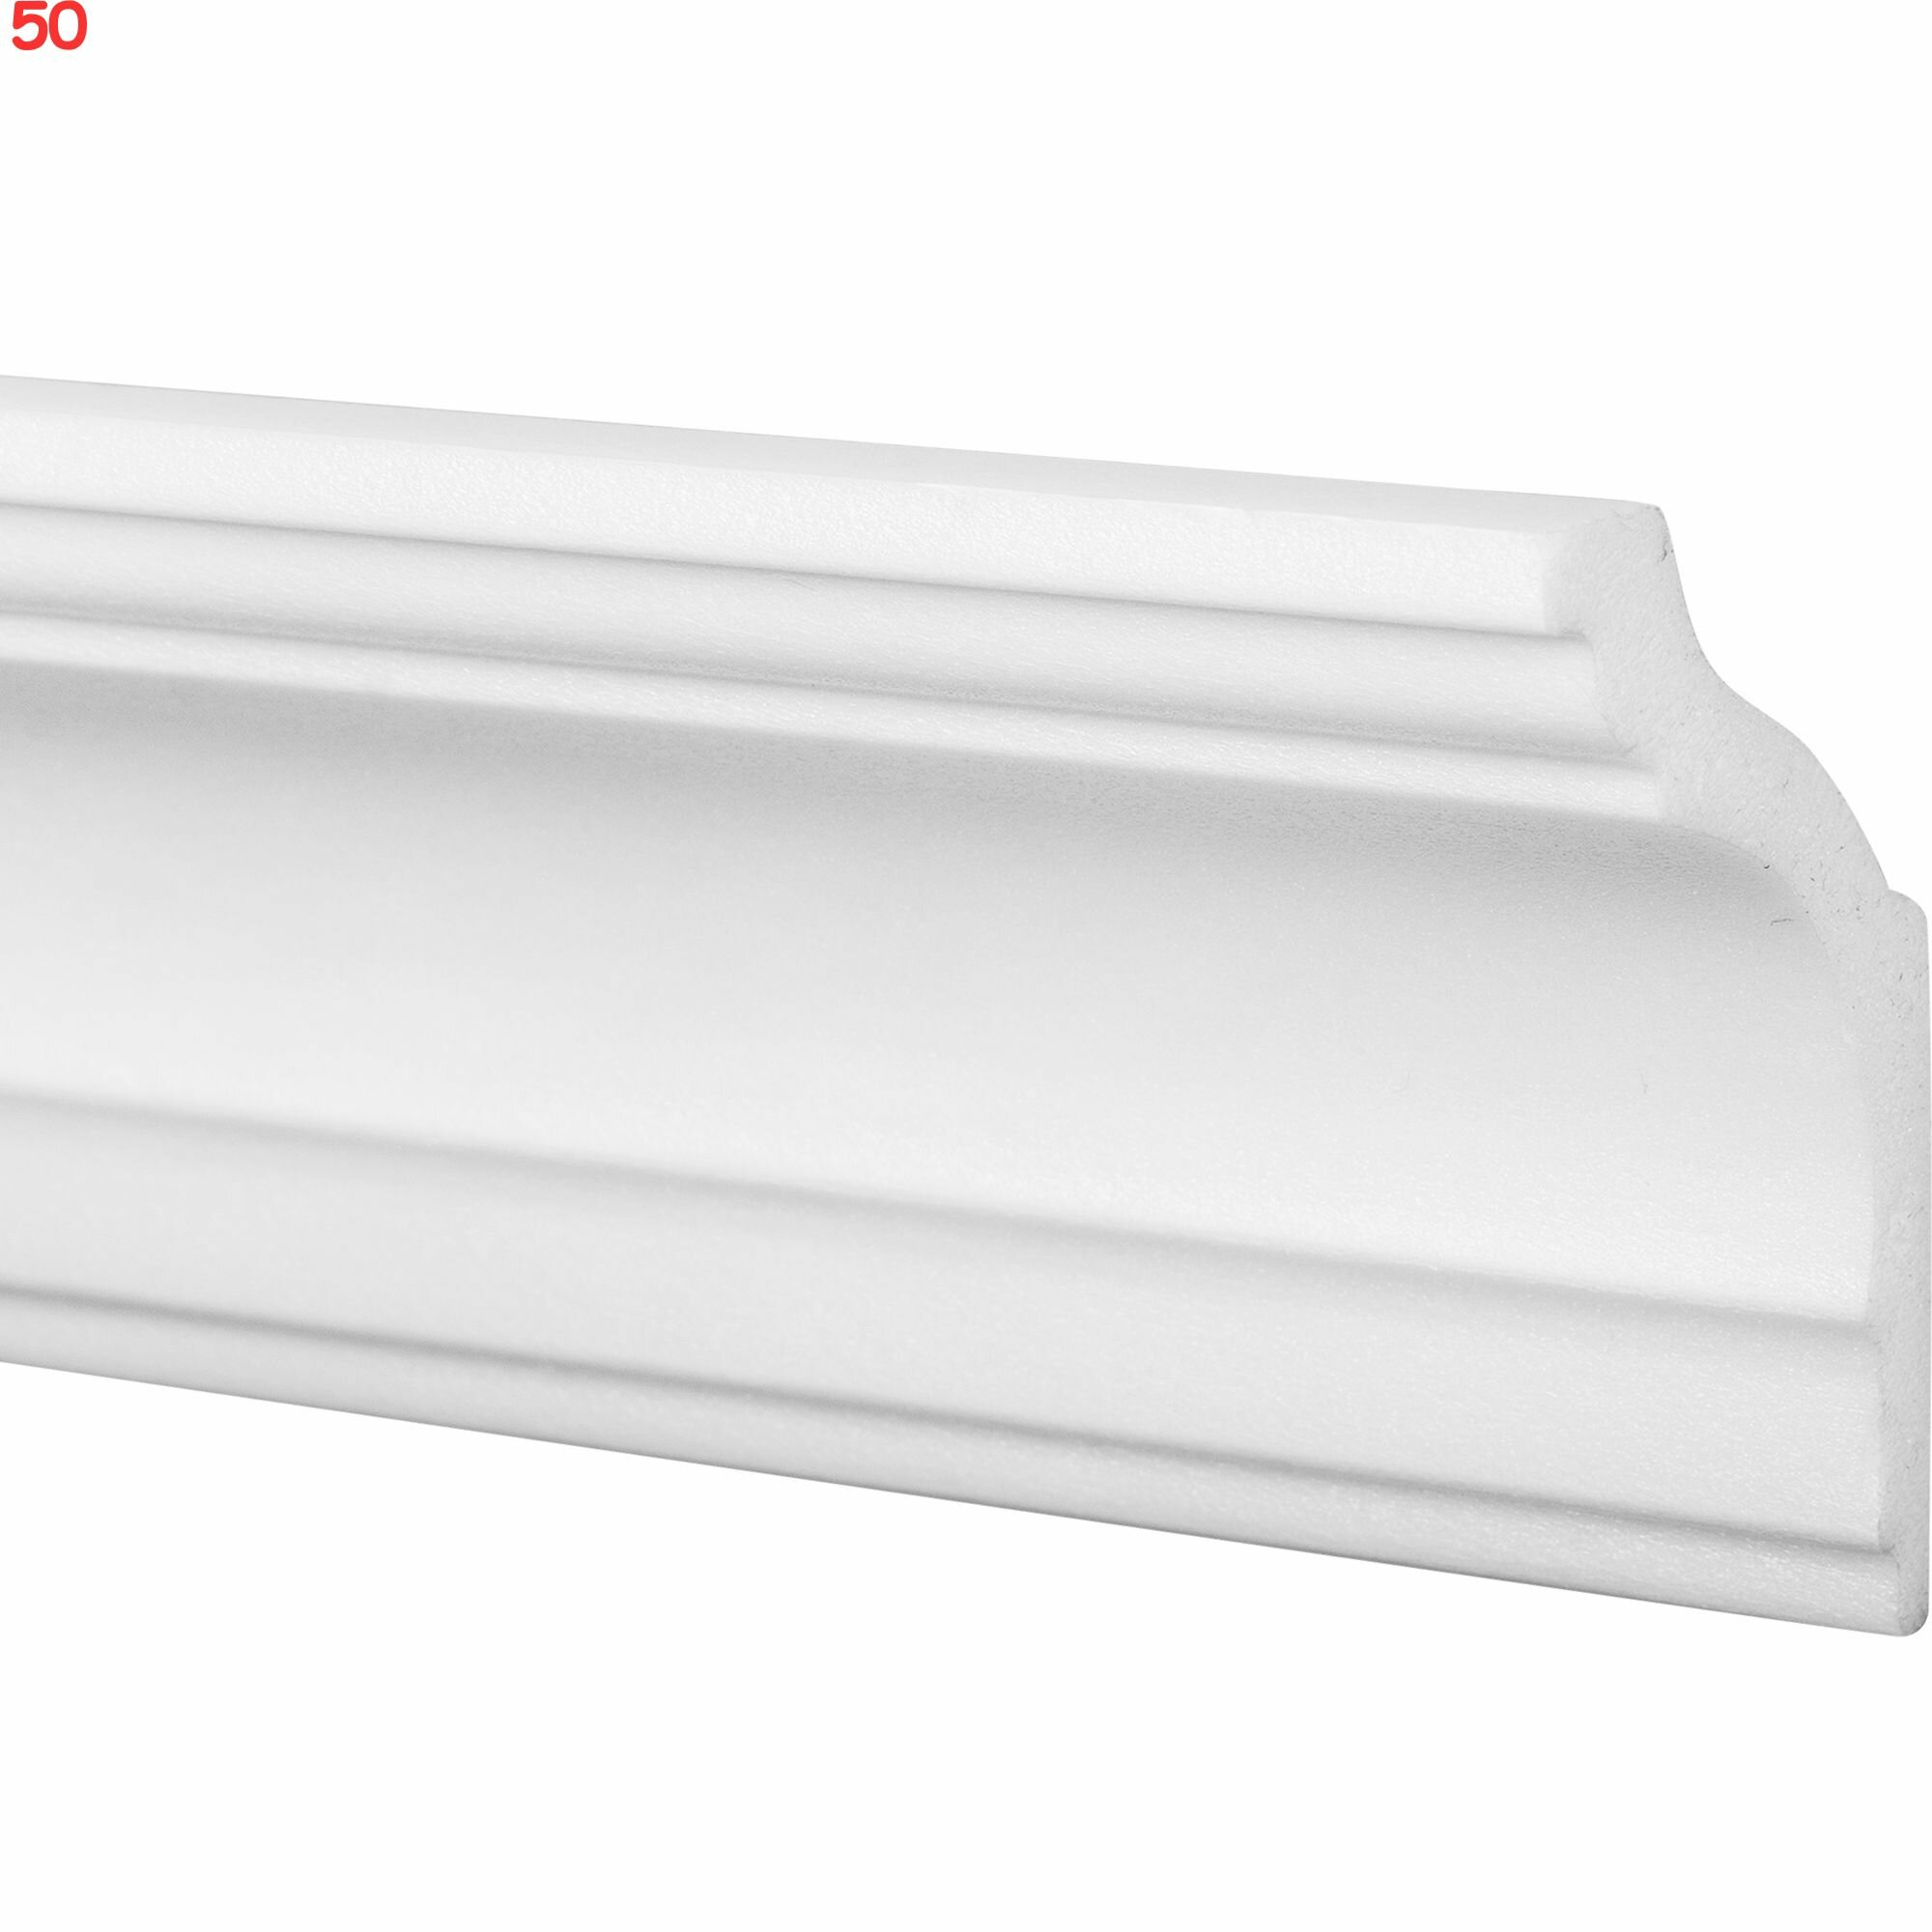 Плинтус для натяжных потолков экструдированный полистирол 08018А белый 40х70х2000 мм (50 шт.)